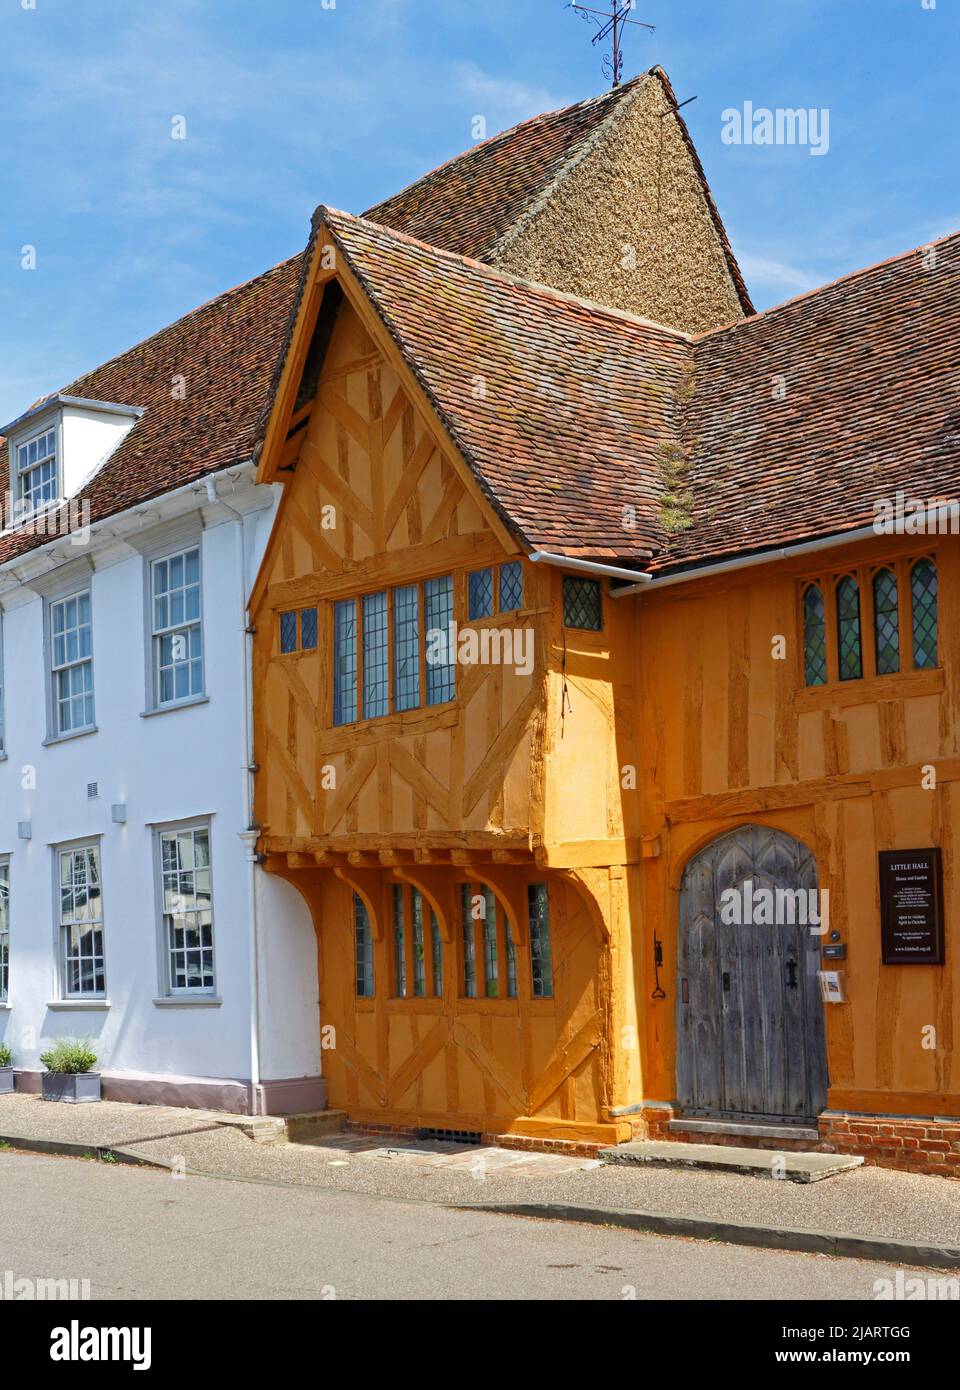 Detalles arquitectónicos de la bien conservada pequeña sala medieval en la plaza principal de Lavenham, Suffolk, Inglaterra, Reino Unido. Foto de stock